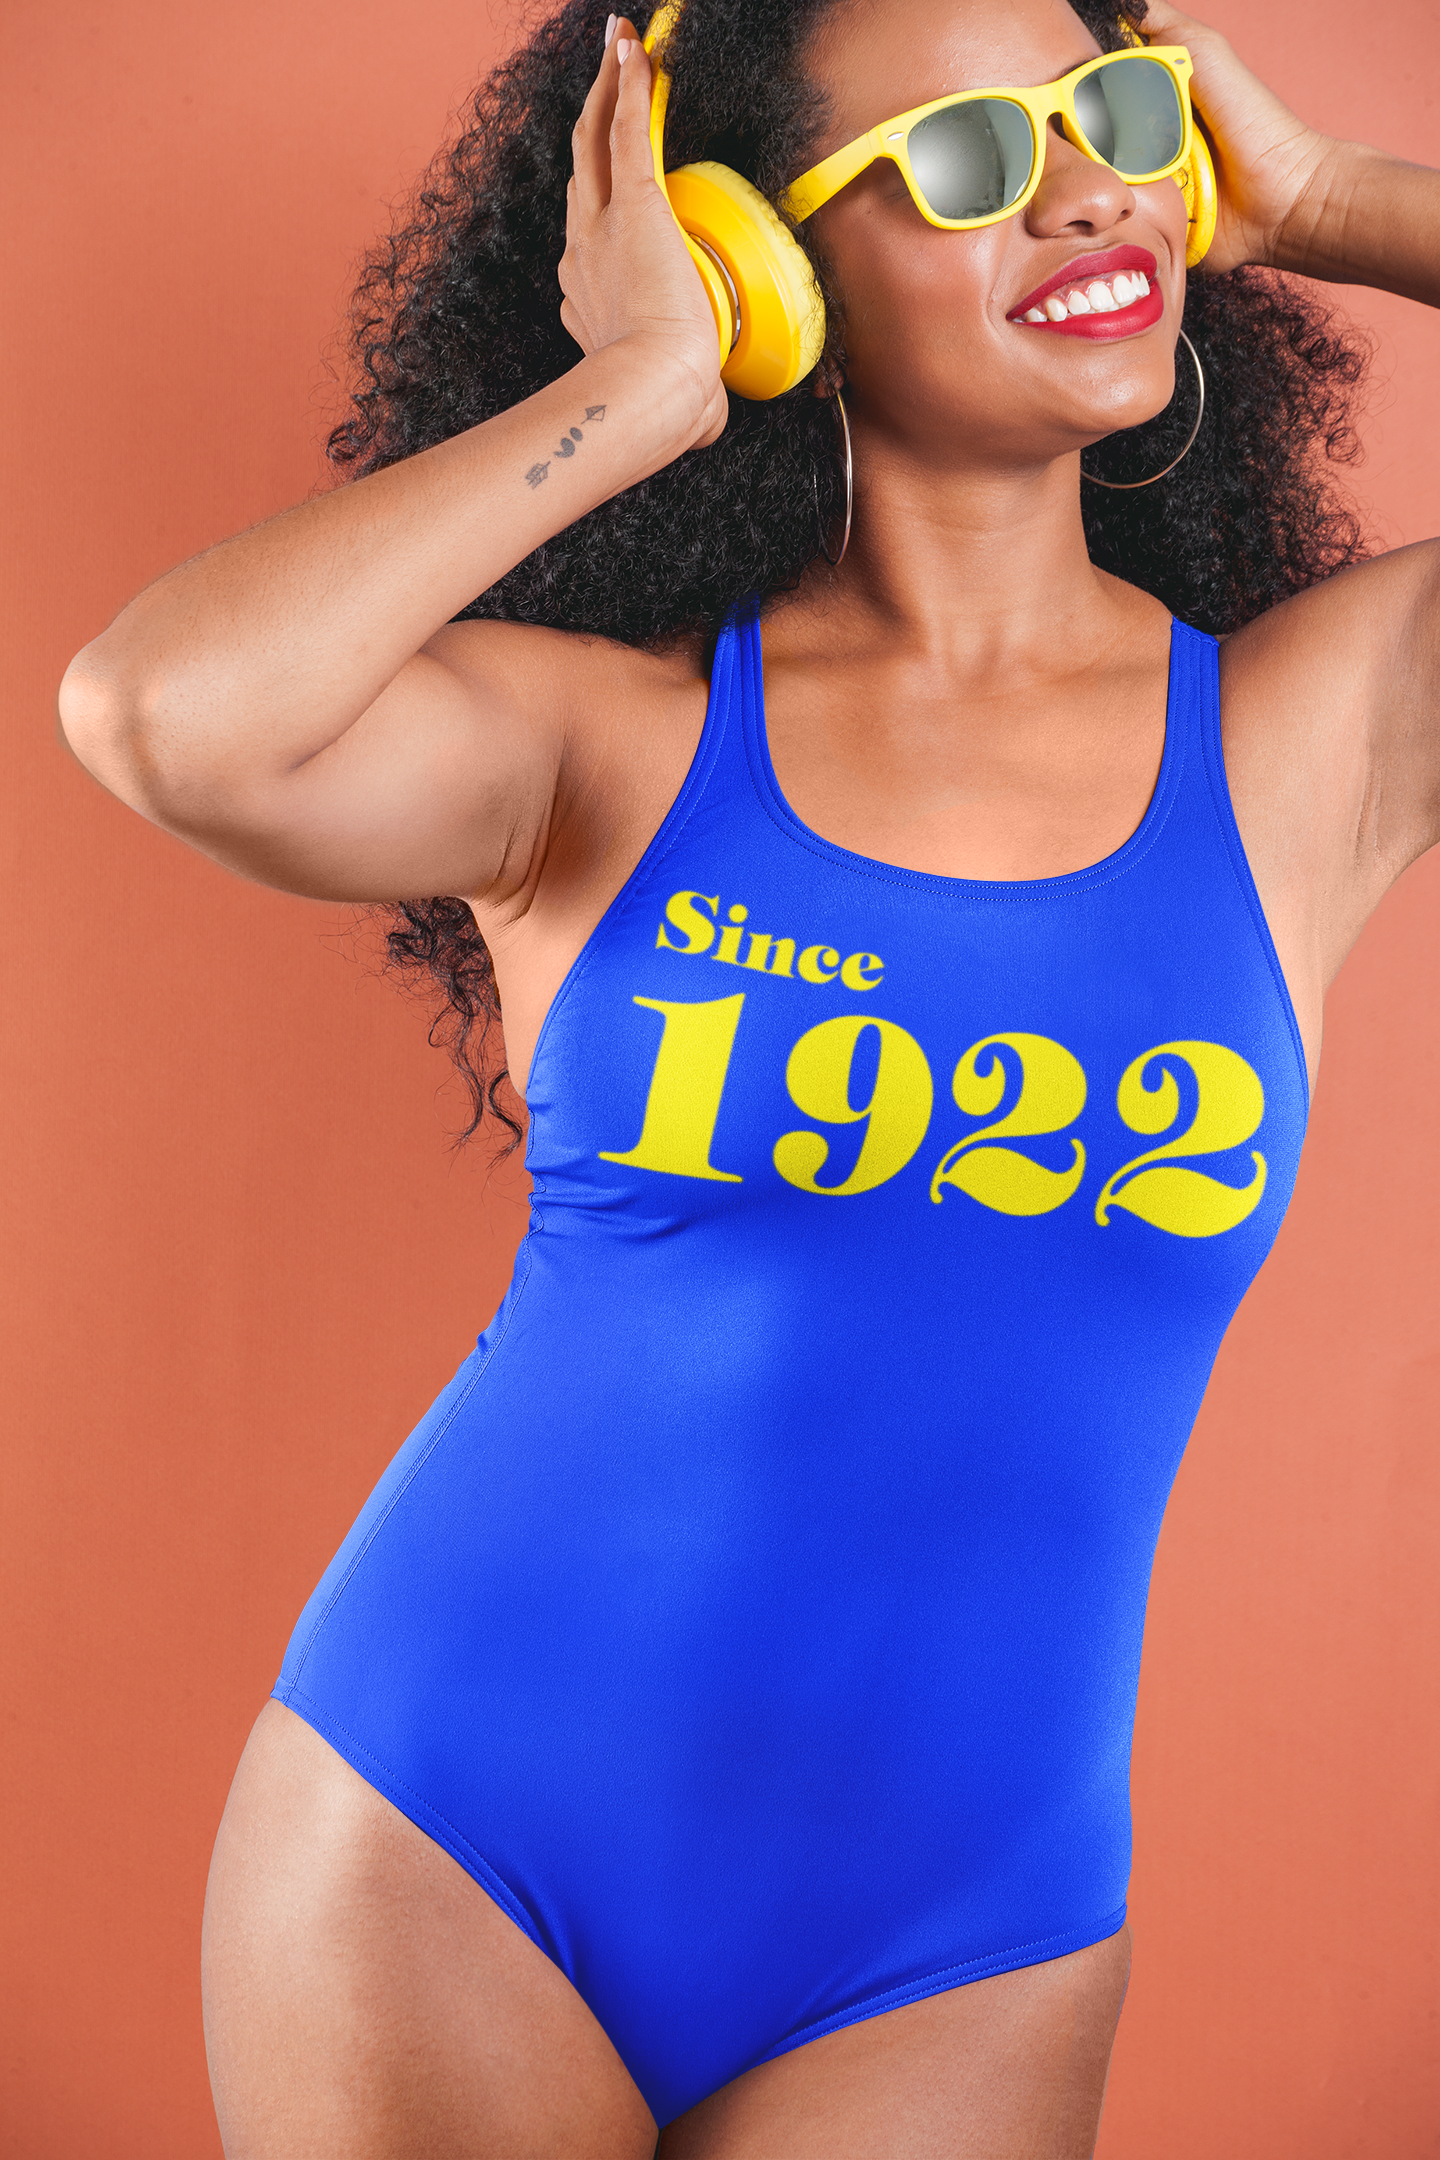 Since 1922 - Swimsuit SALE!